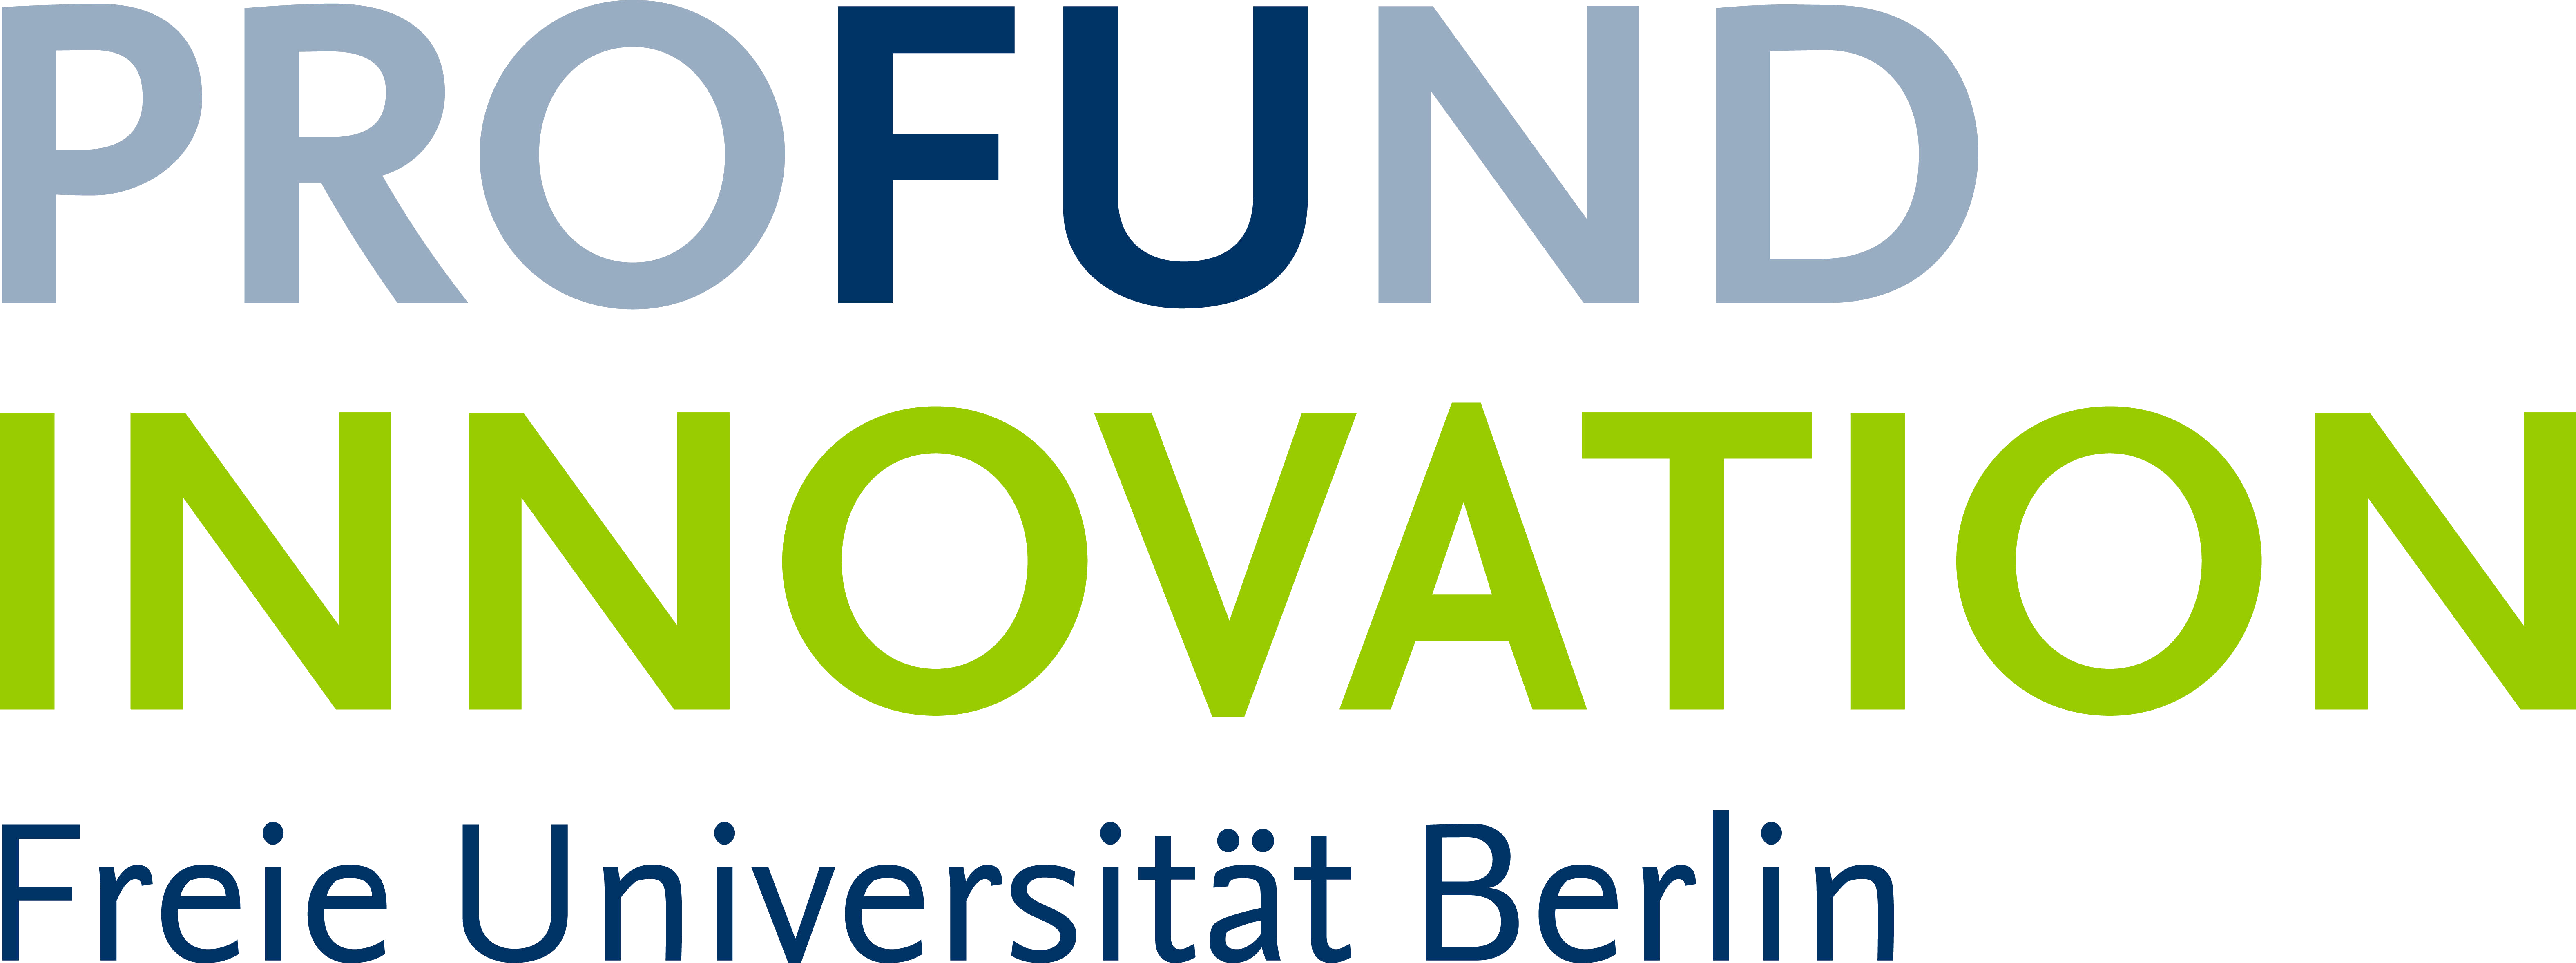 profund innovation logo